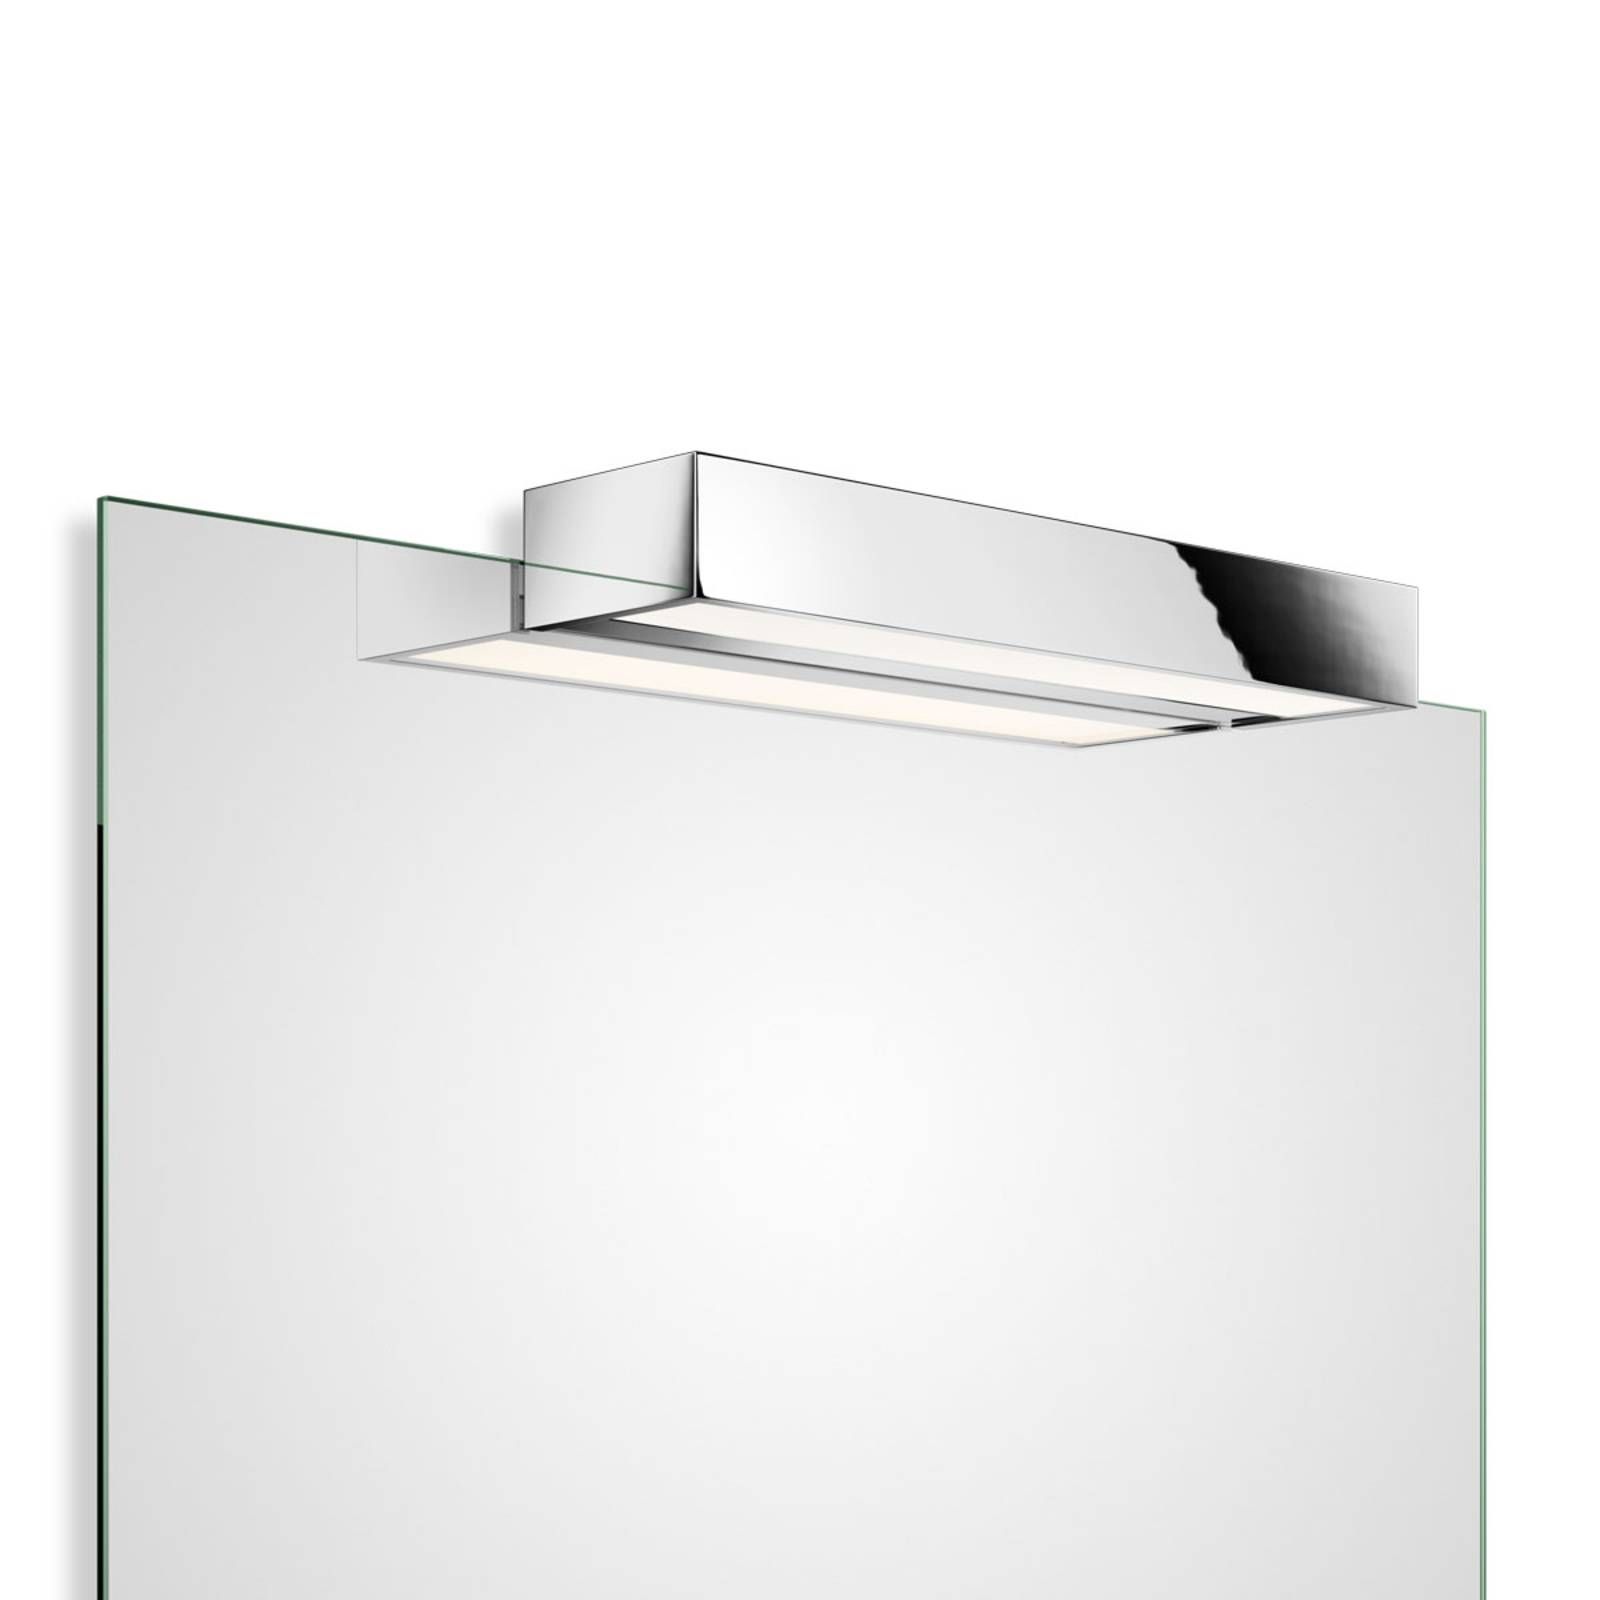 Decor Walther Box 1-40 N zrkadlové LED 2 700 K, Kúpeľňa, kov, sklo, 16W, L: 40 cm, K: 5cm